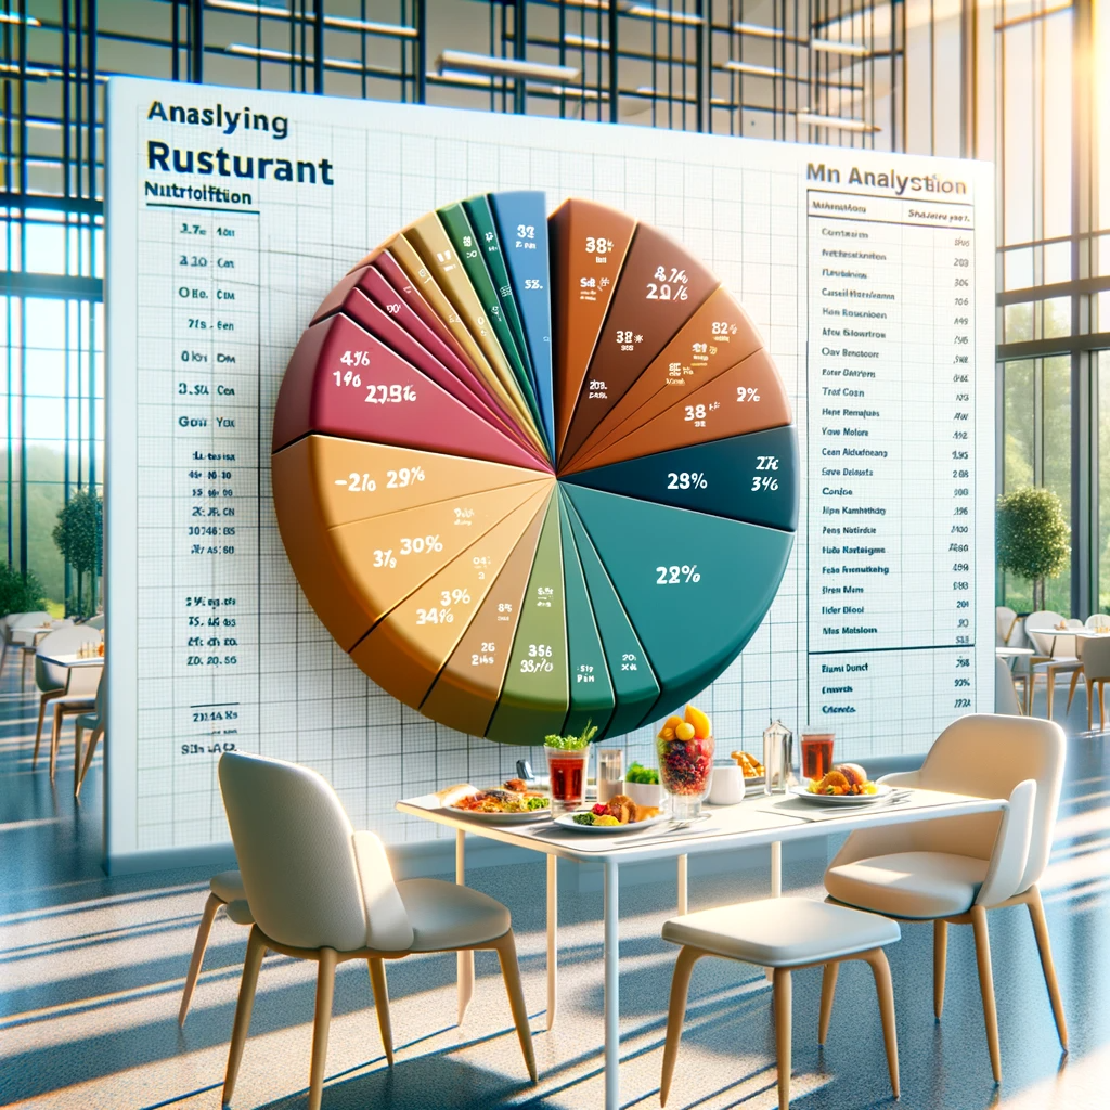 Analyzing EPFL Restaurant Menus